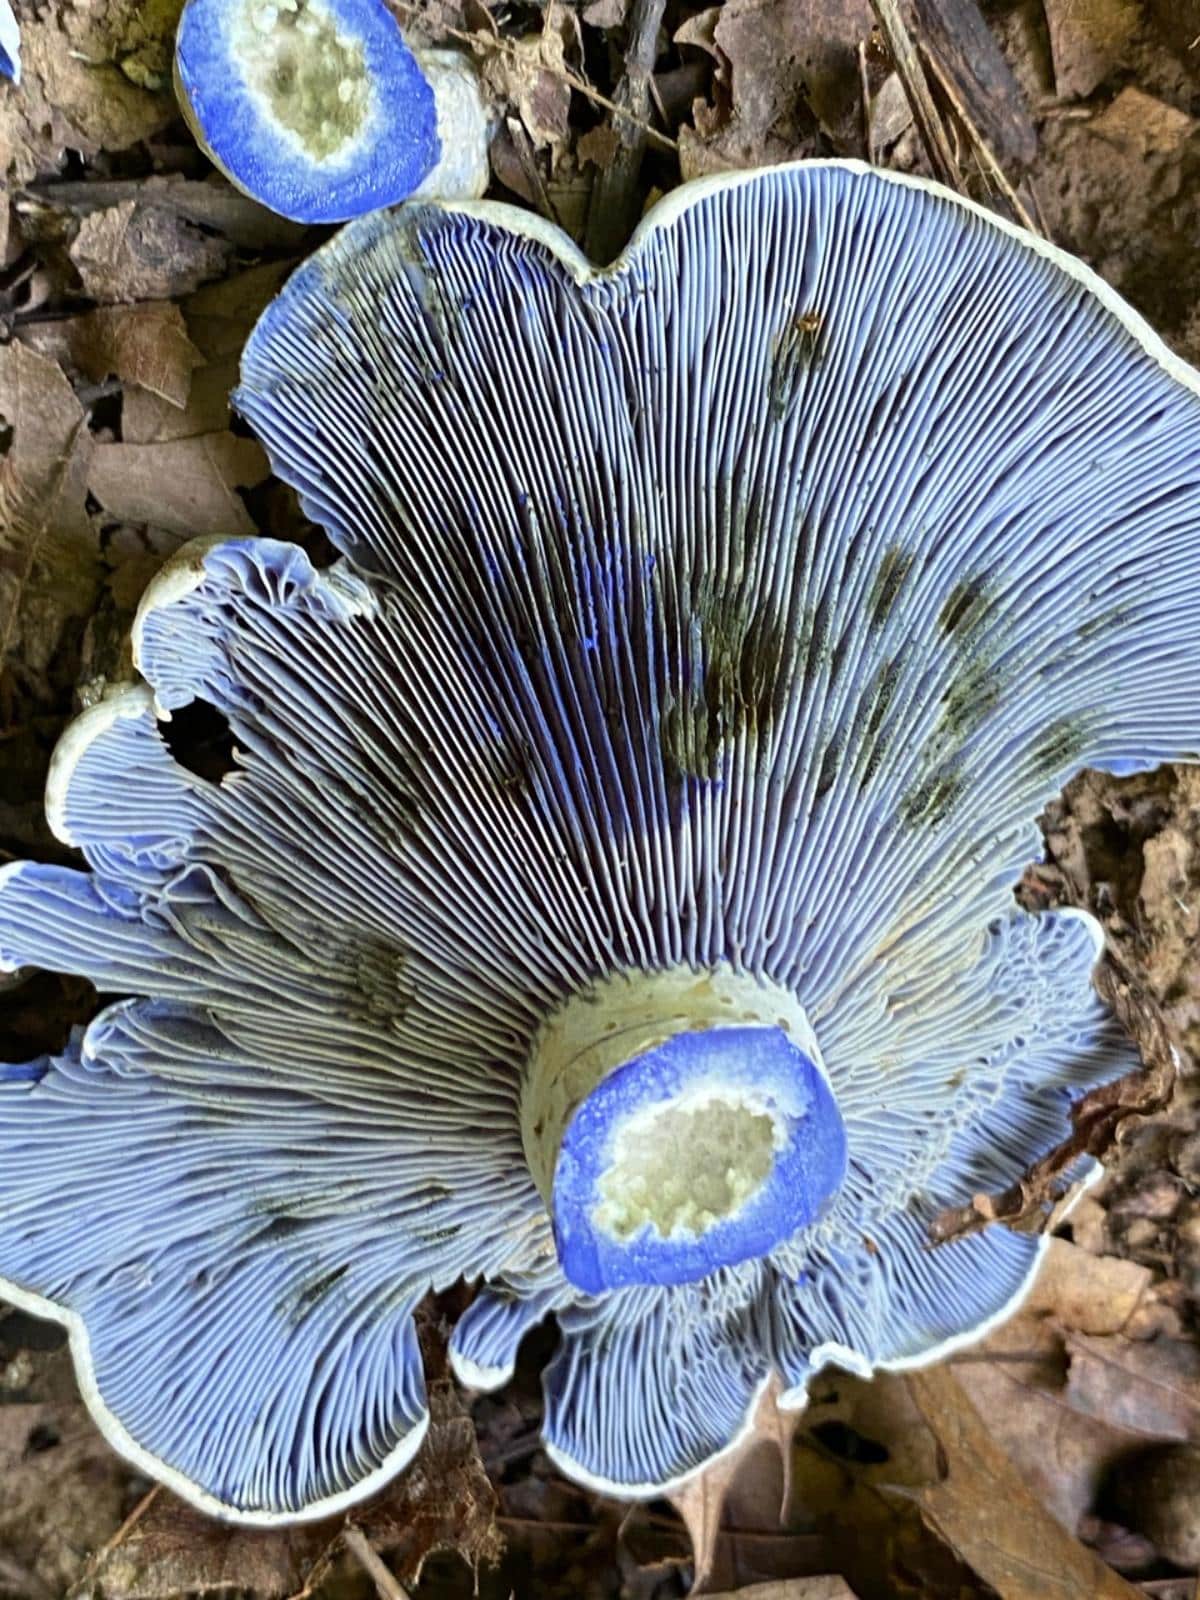 lactarius indigo mushroom